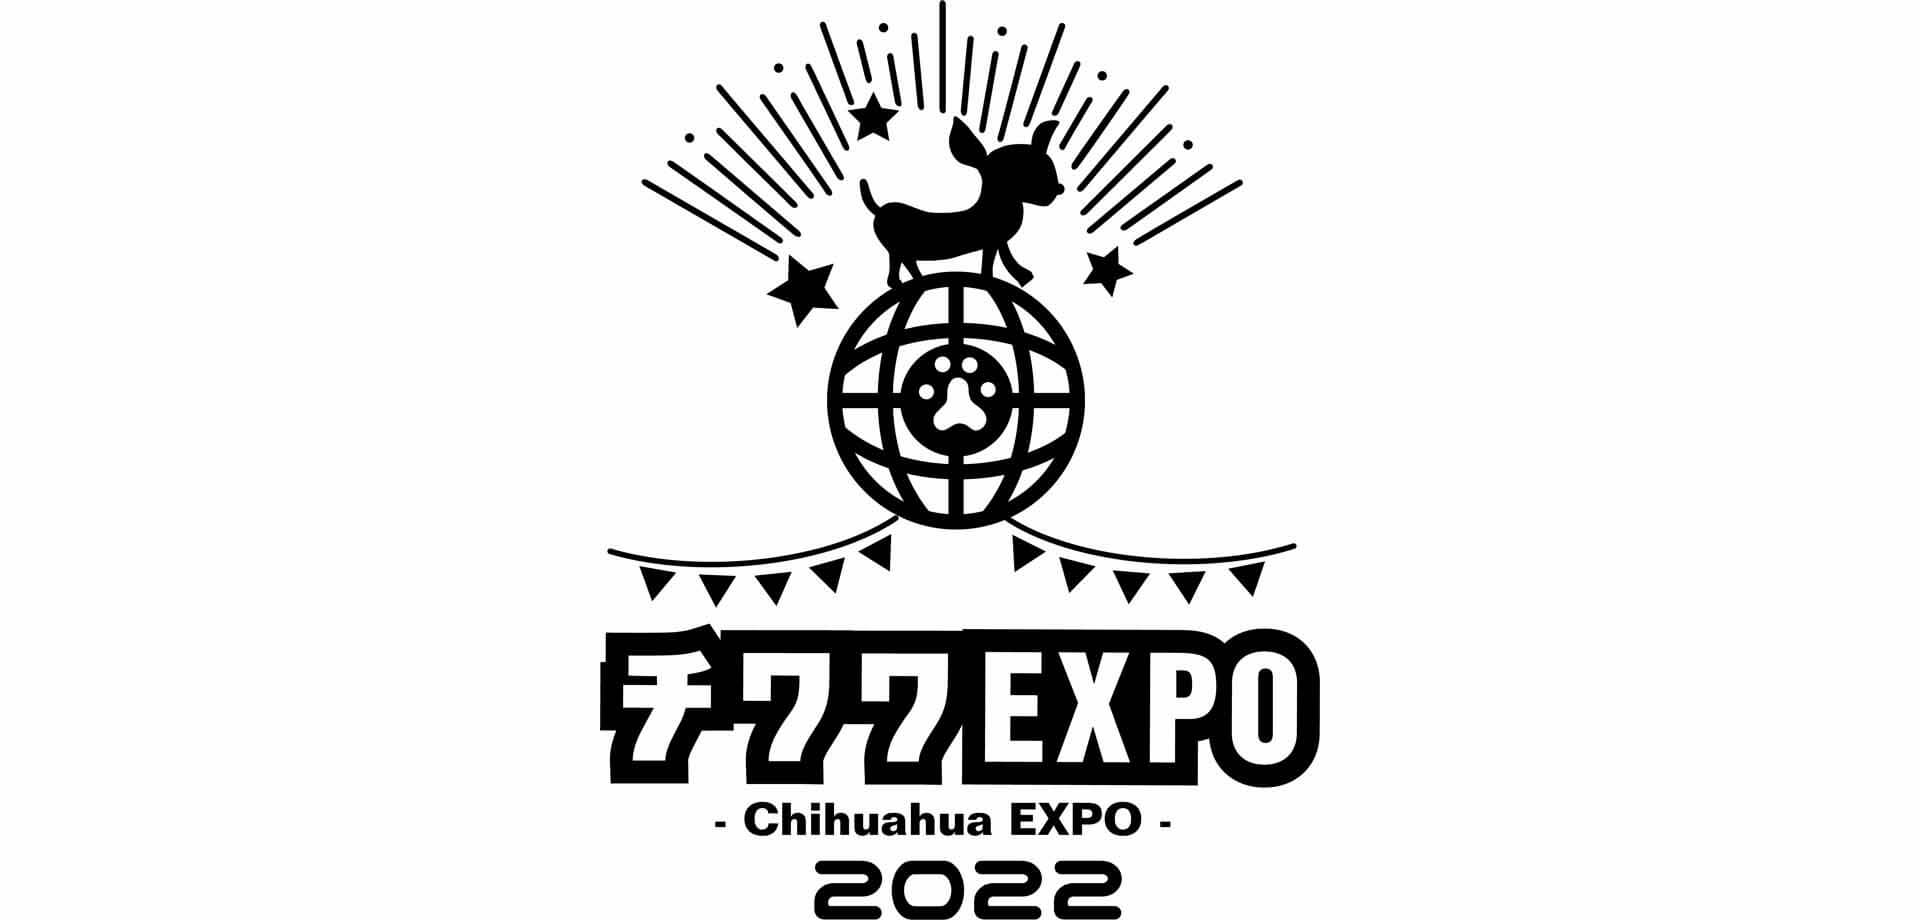 チワワEXPO2022 – Chihuahua EXPO 2022